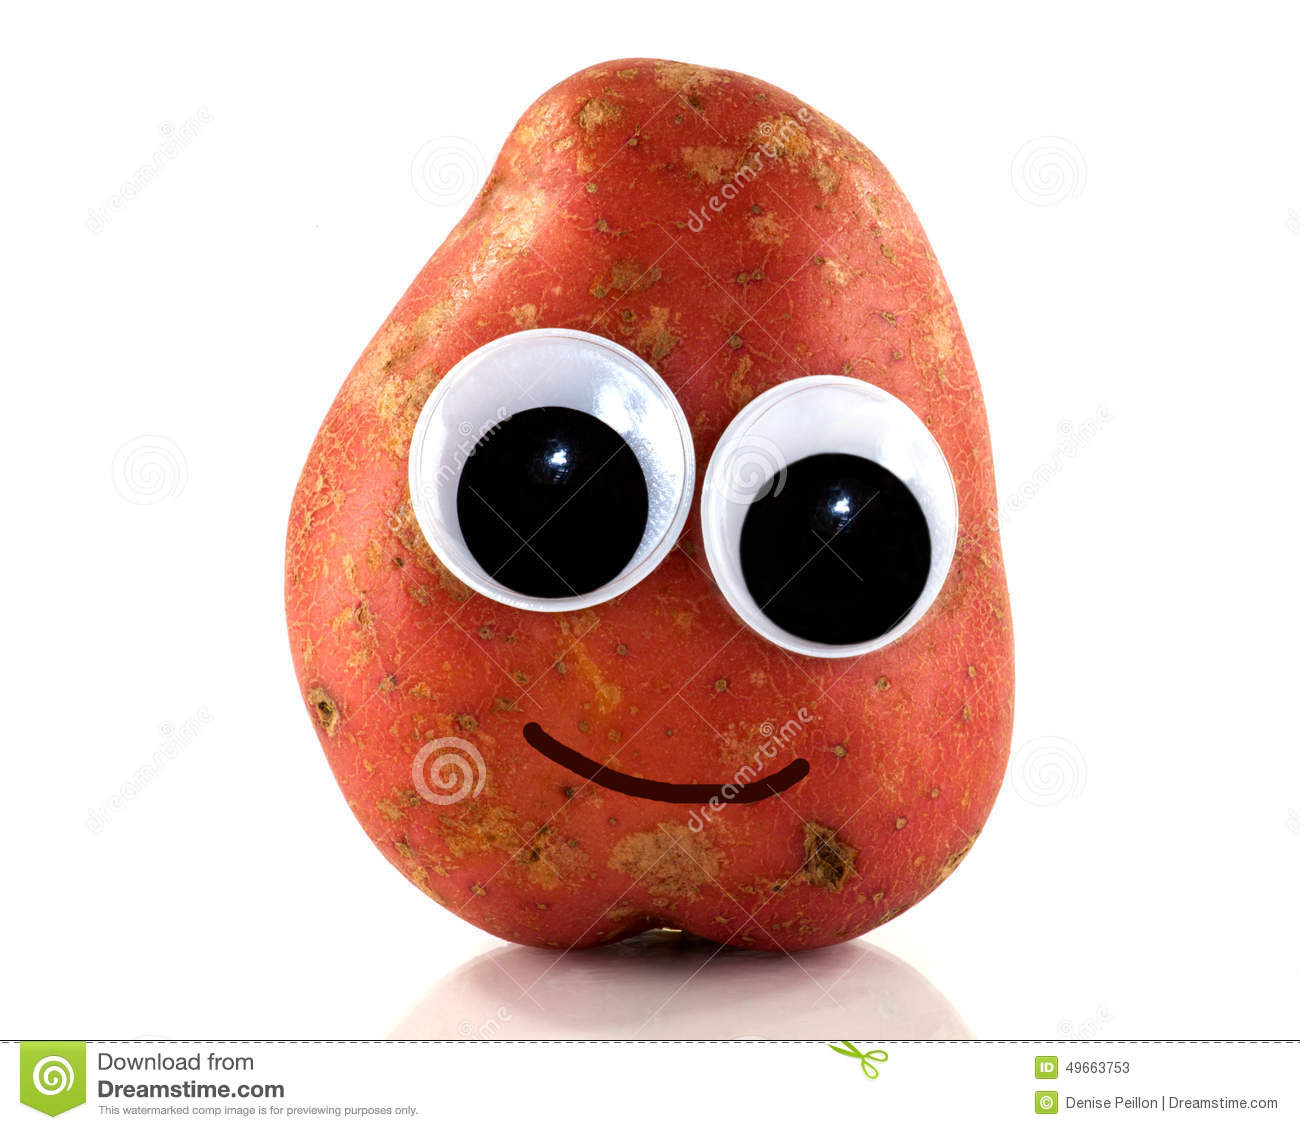 Potato With Eyes
 Potato with eyes stock image Image of plastic smiling